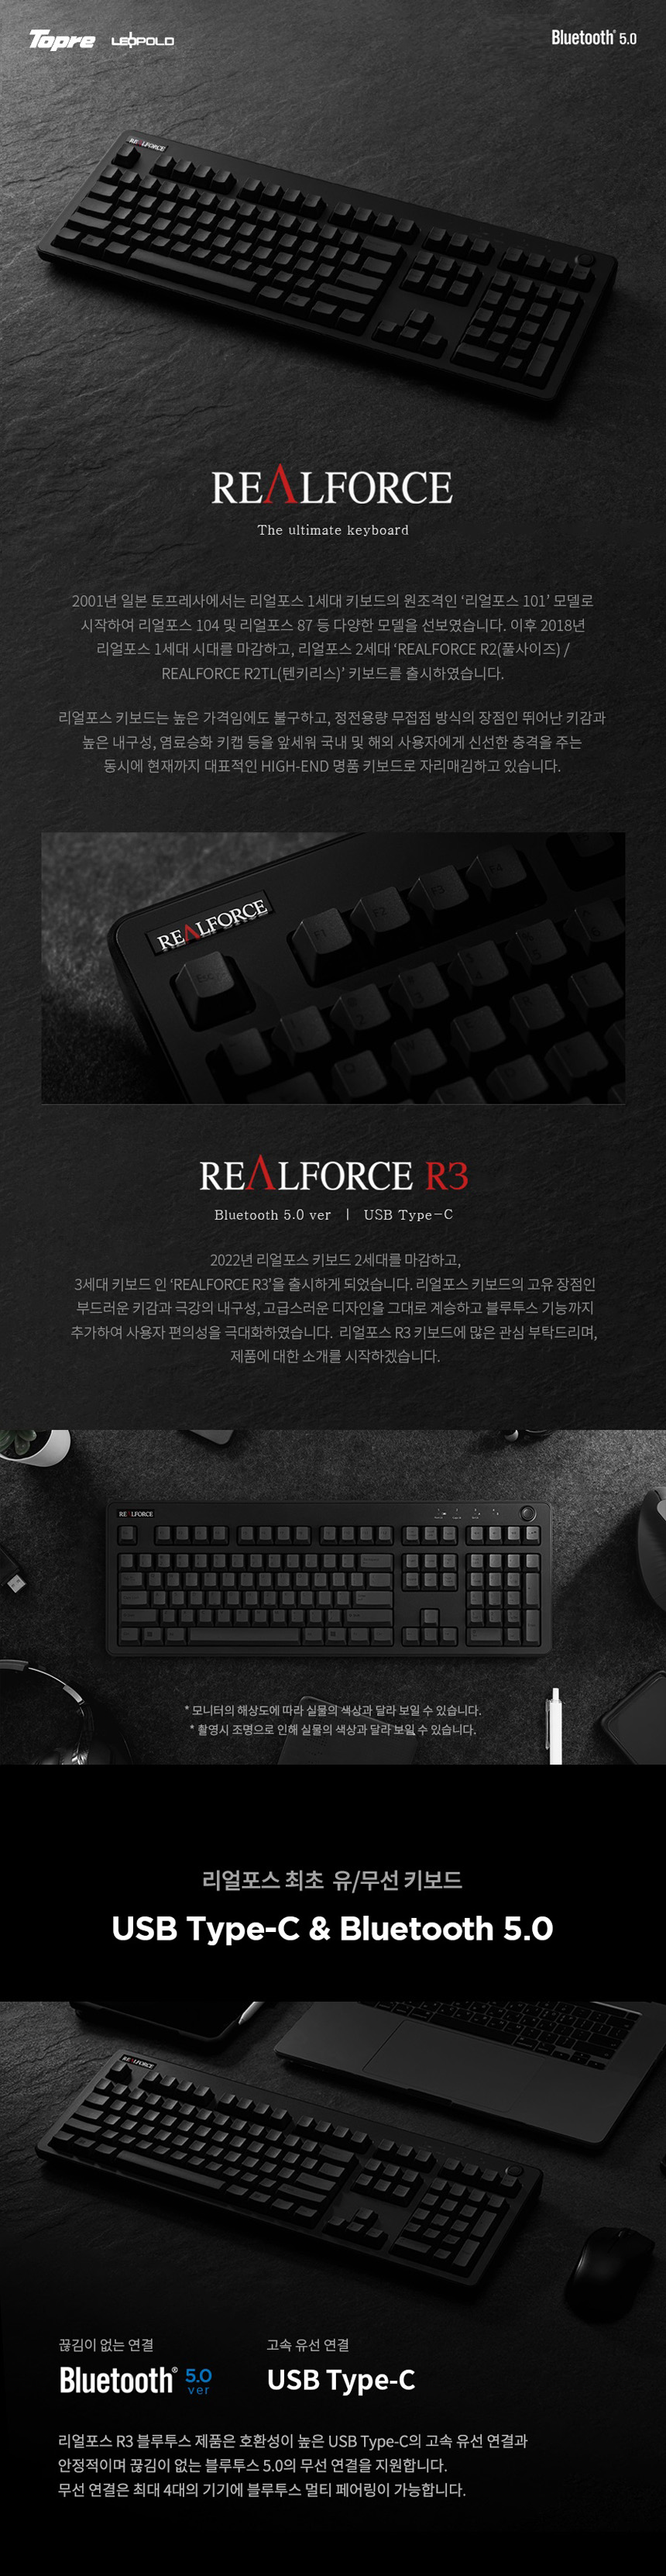 realfprce3_black_full_na1.jpg